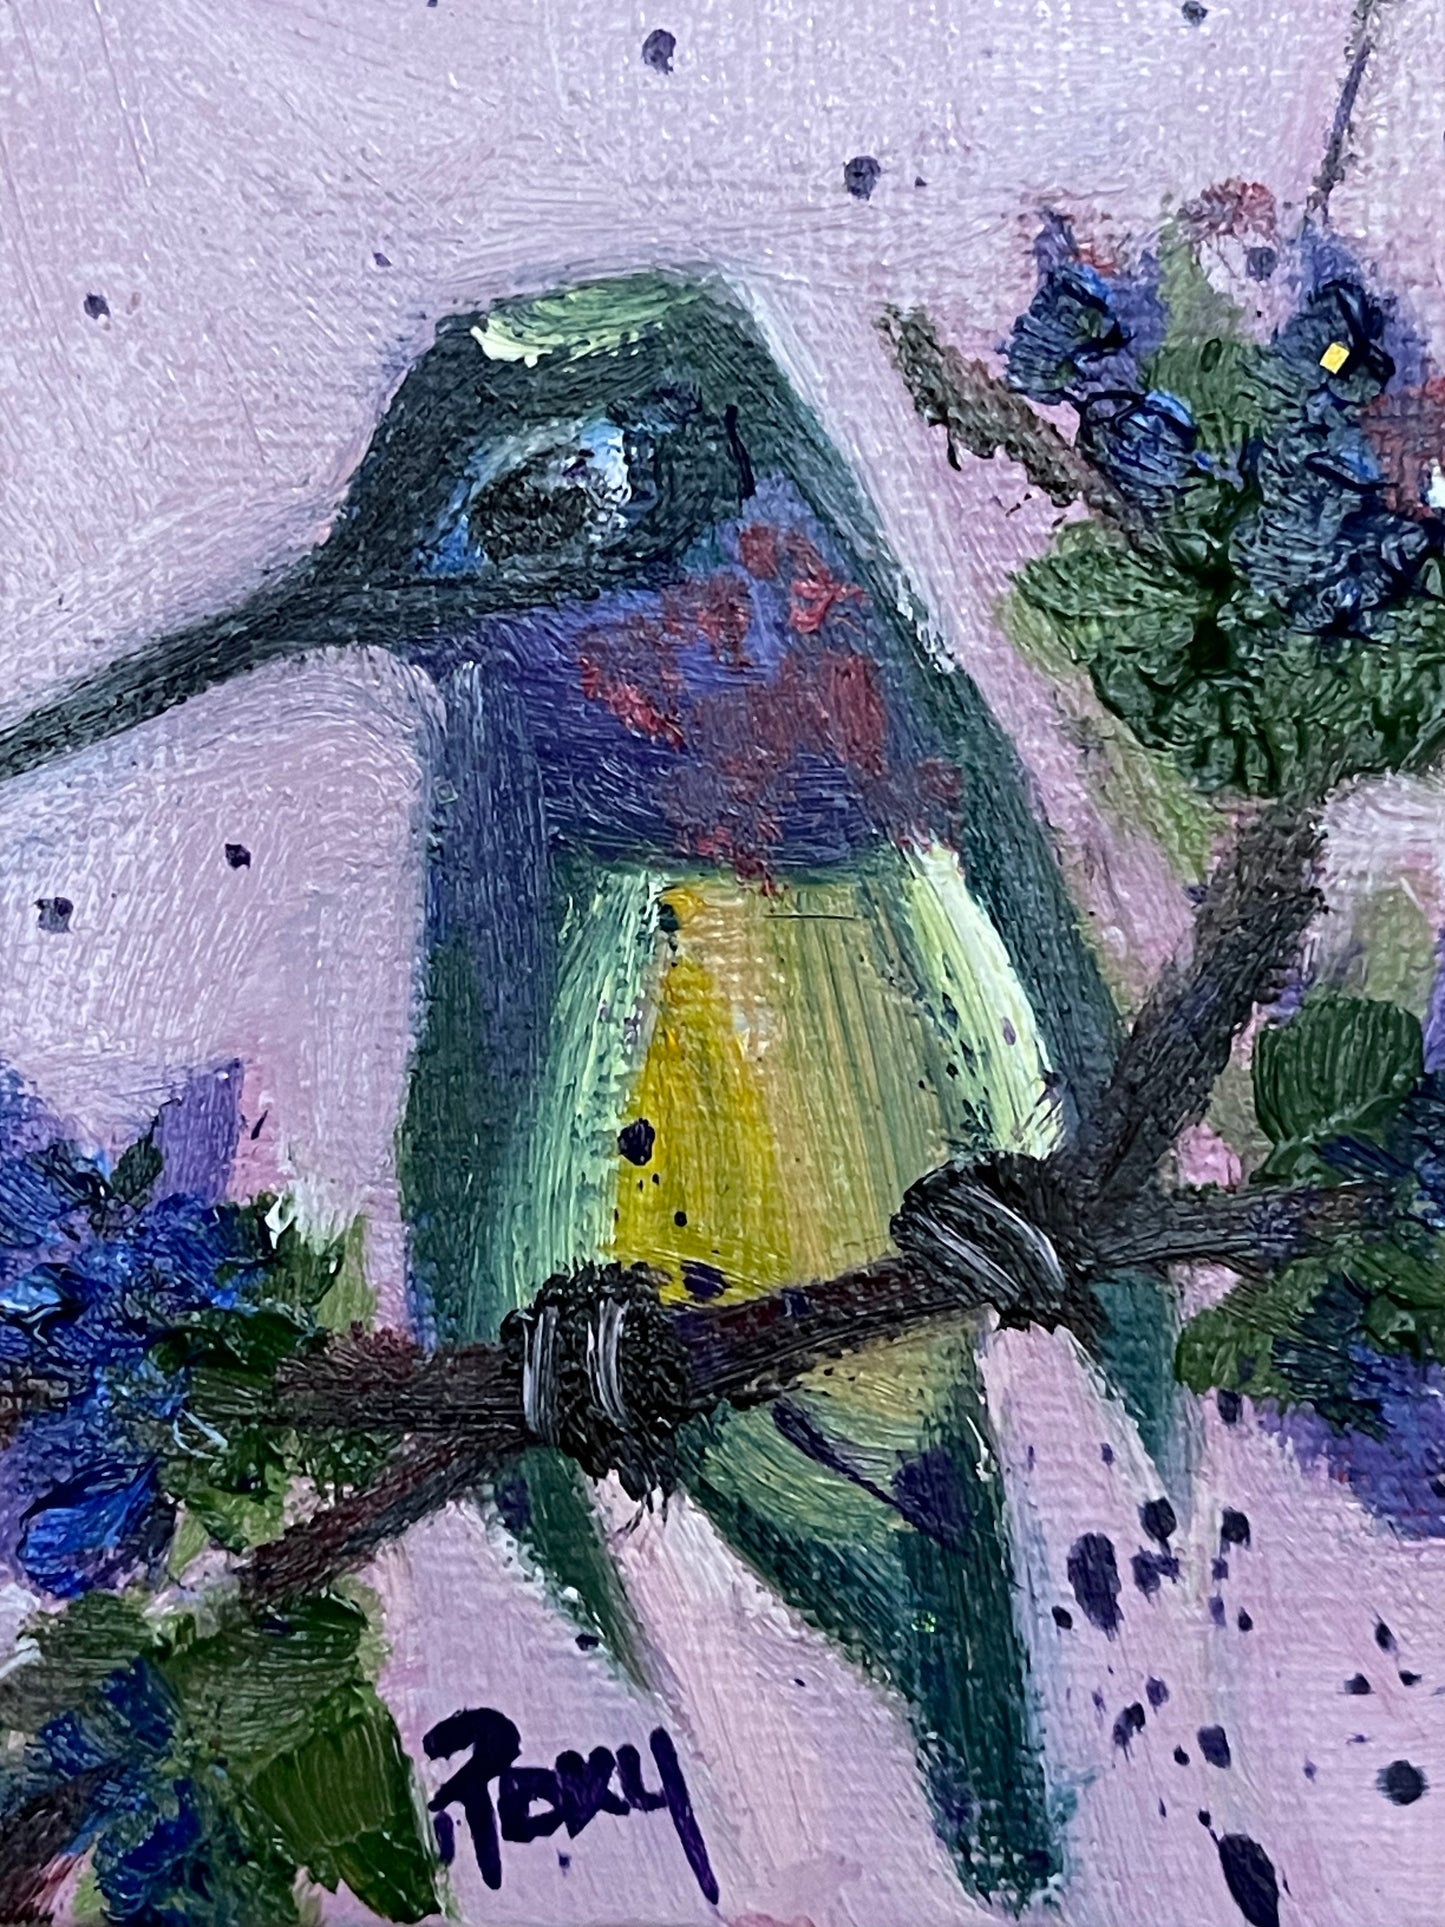 Linda pequeña pintura al óleo original de colibrí en miniatura con soporte